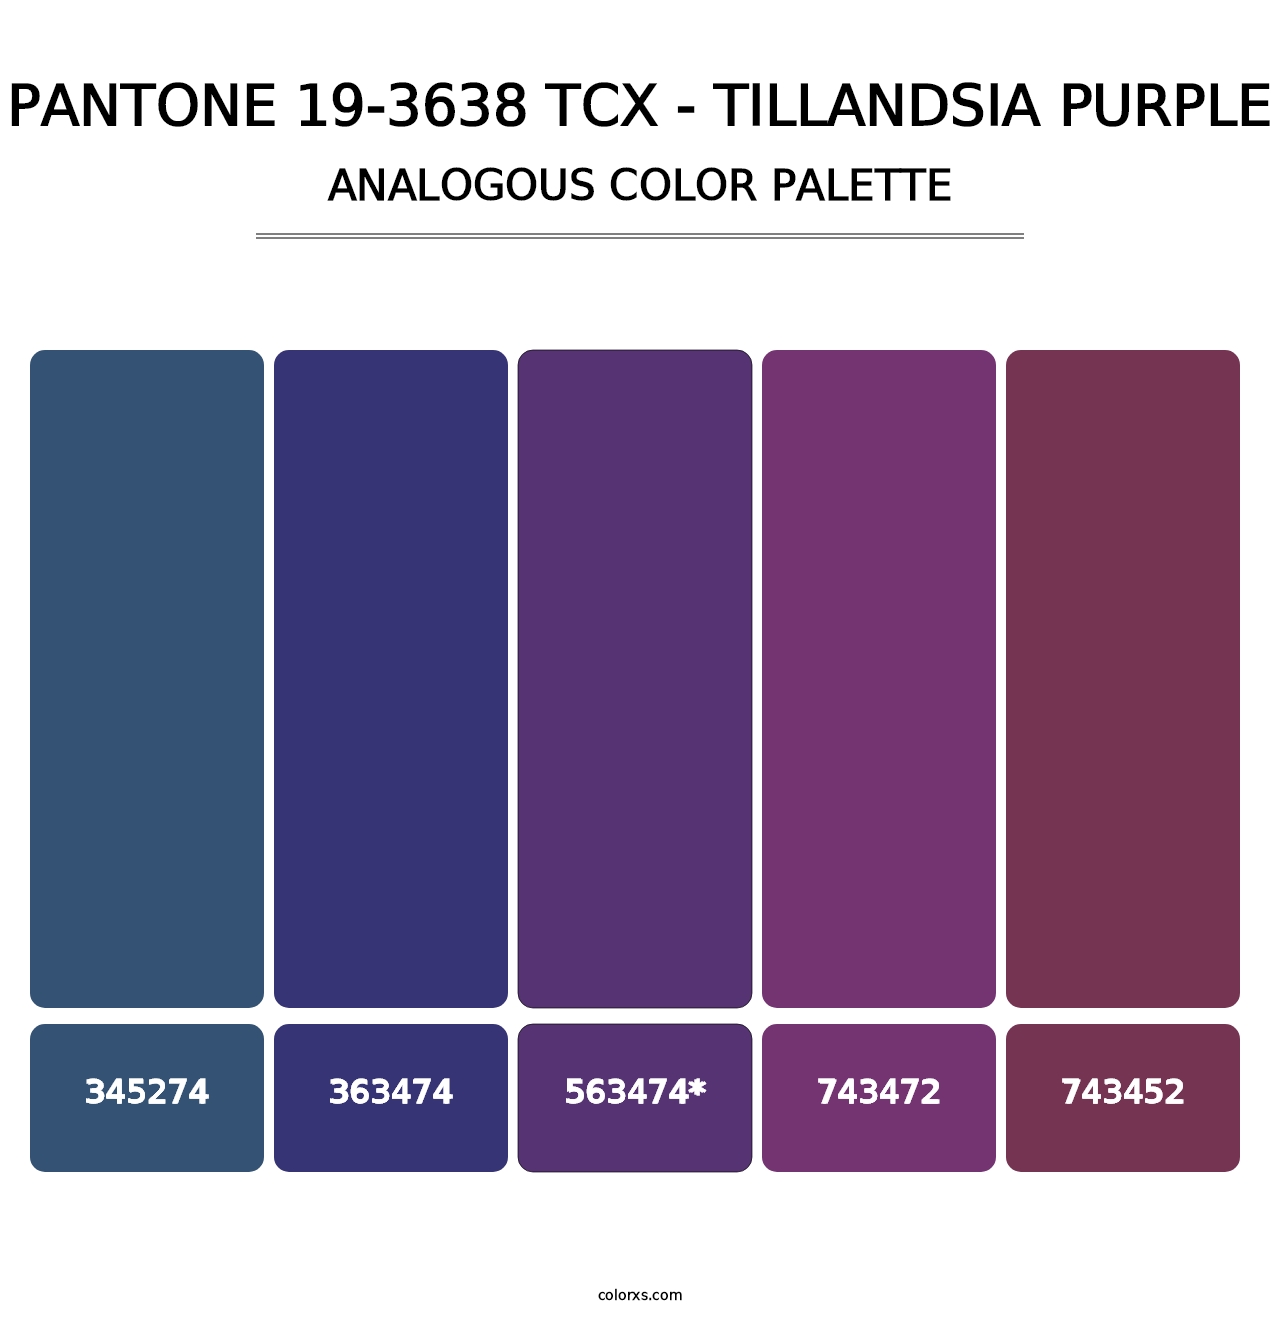 PANTONE 19-3638 TCX - Tillandsia Purple - Analogous Color Palette